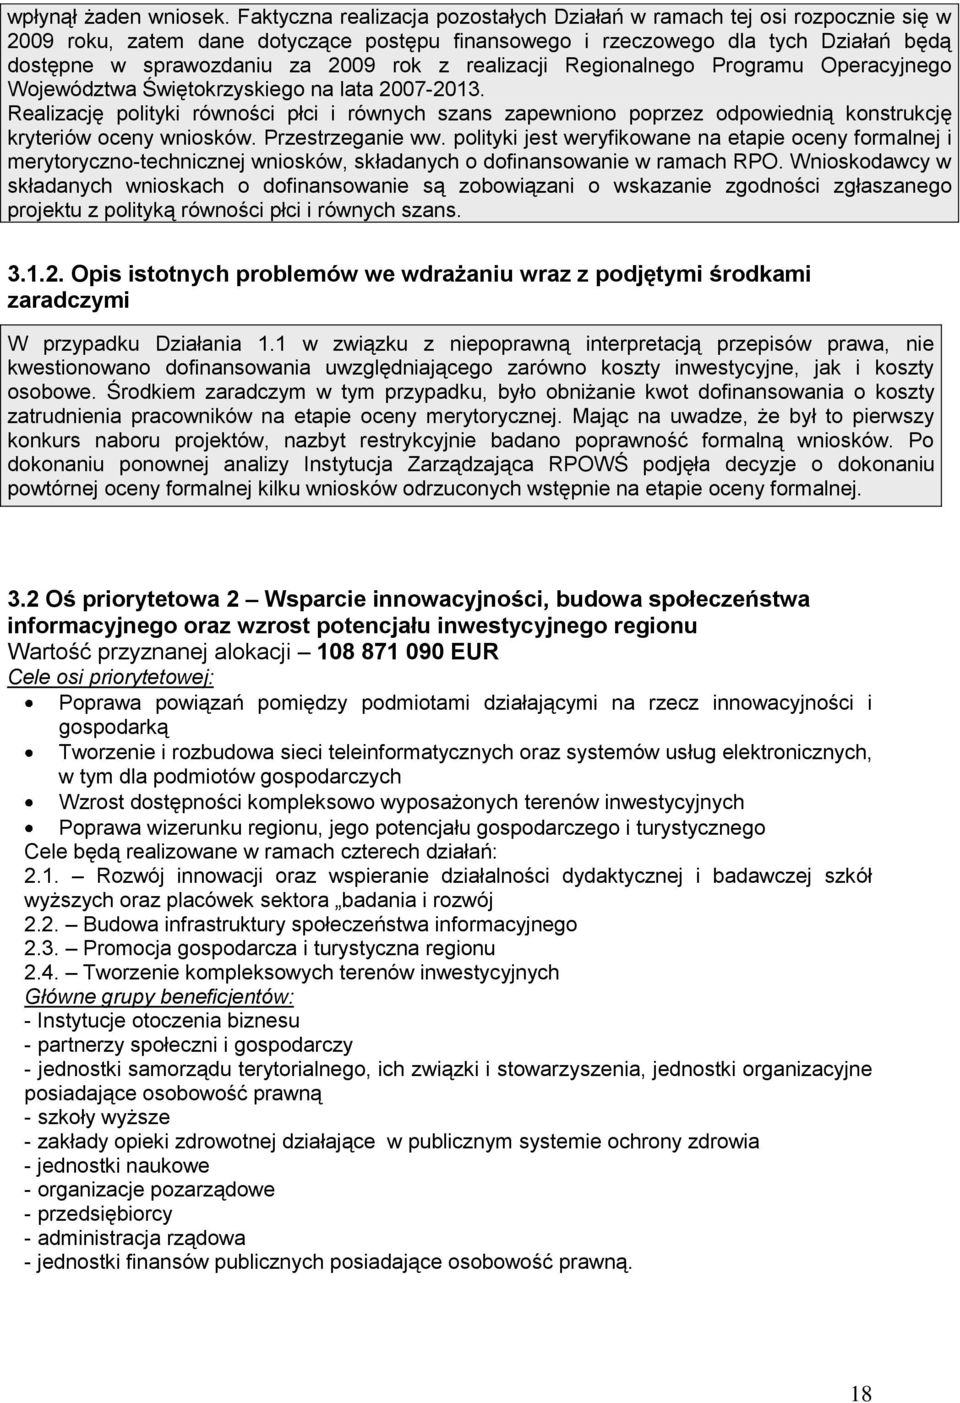 realizacji Regionalnego Programu Operacyjnego Województwa Świętokrzyskiego na lata 2007-2013.